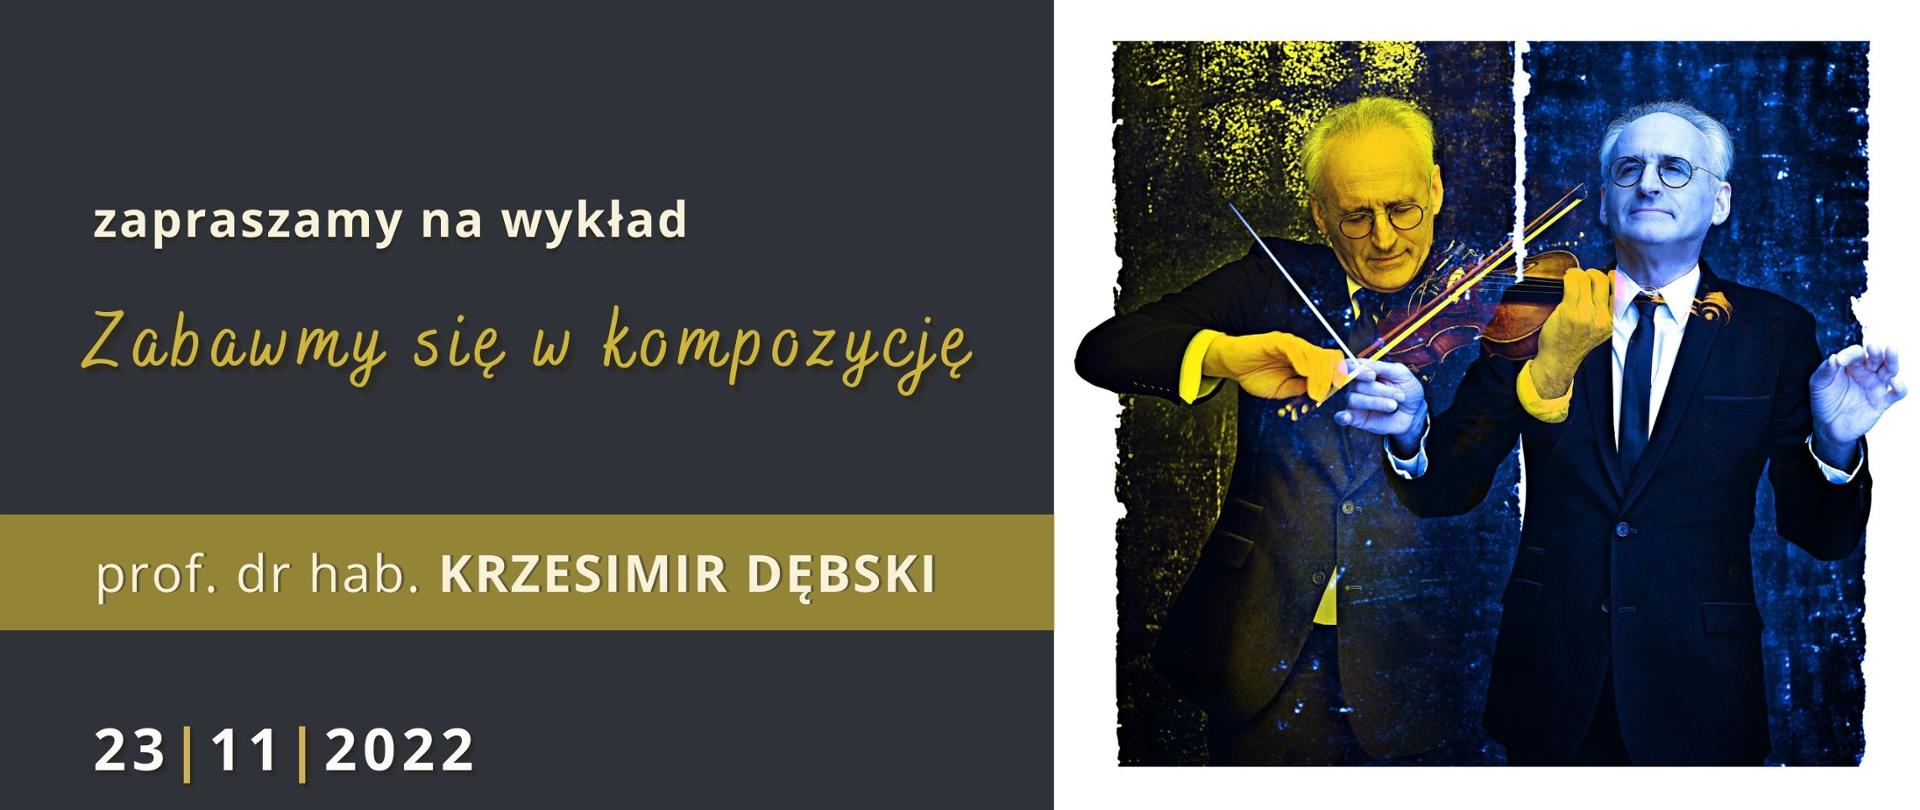 Afisz, na ciemnym tle napis "Zapraszamy na wykład "Zabawmy się w kompozycję" - prof. dr hab. Krzesimir Dębski, 23.11.2022